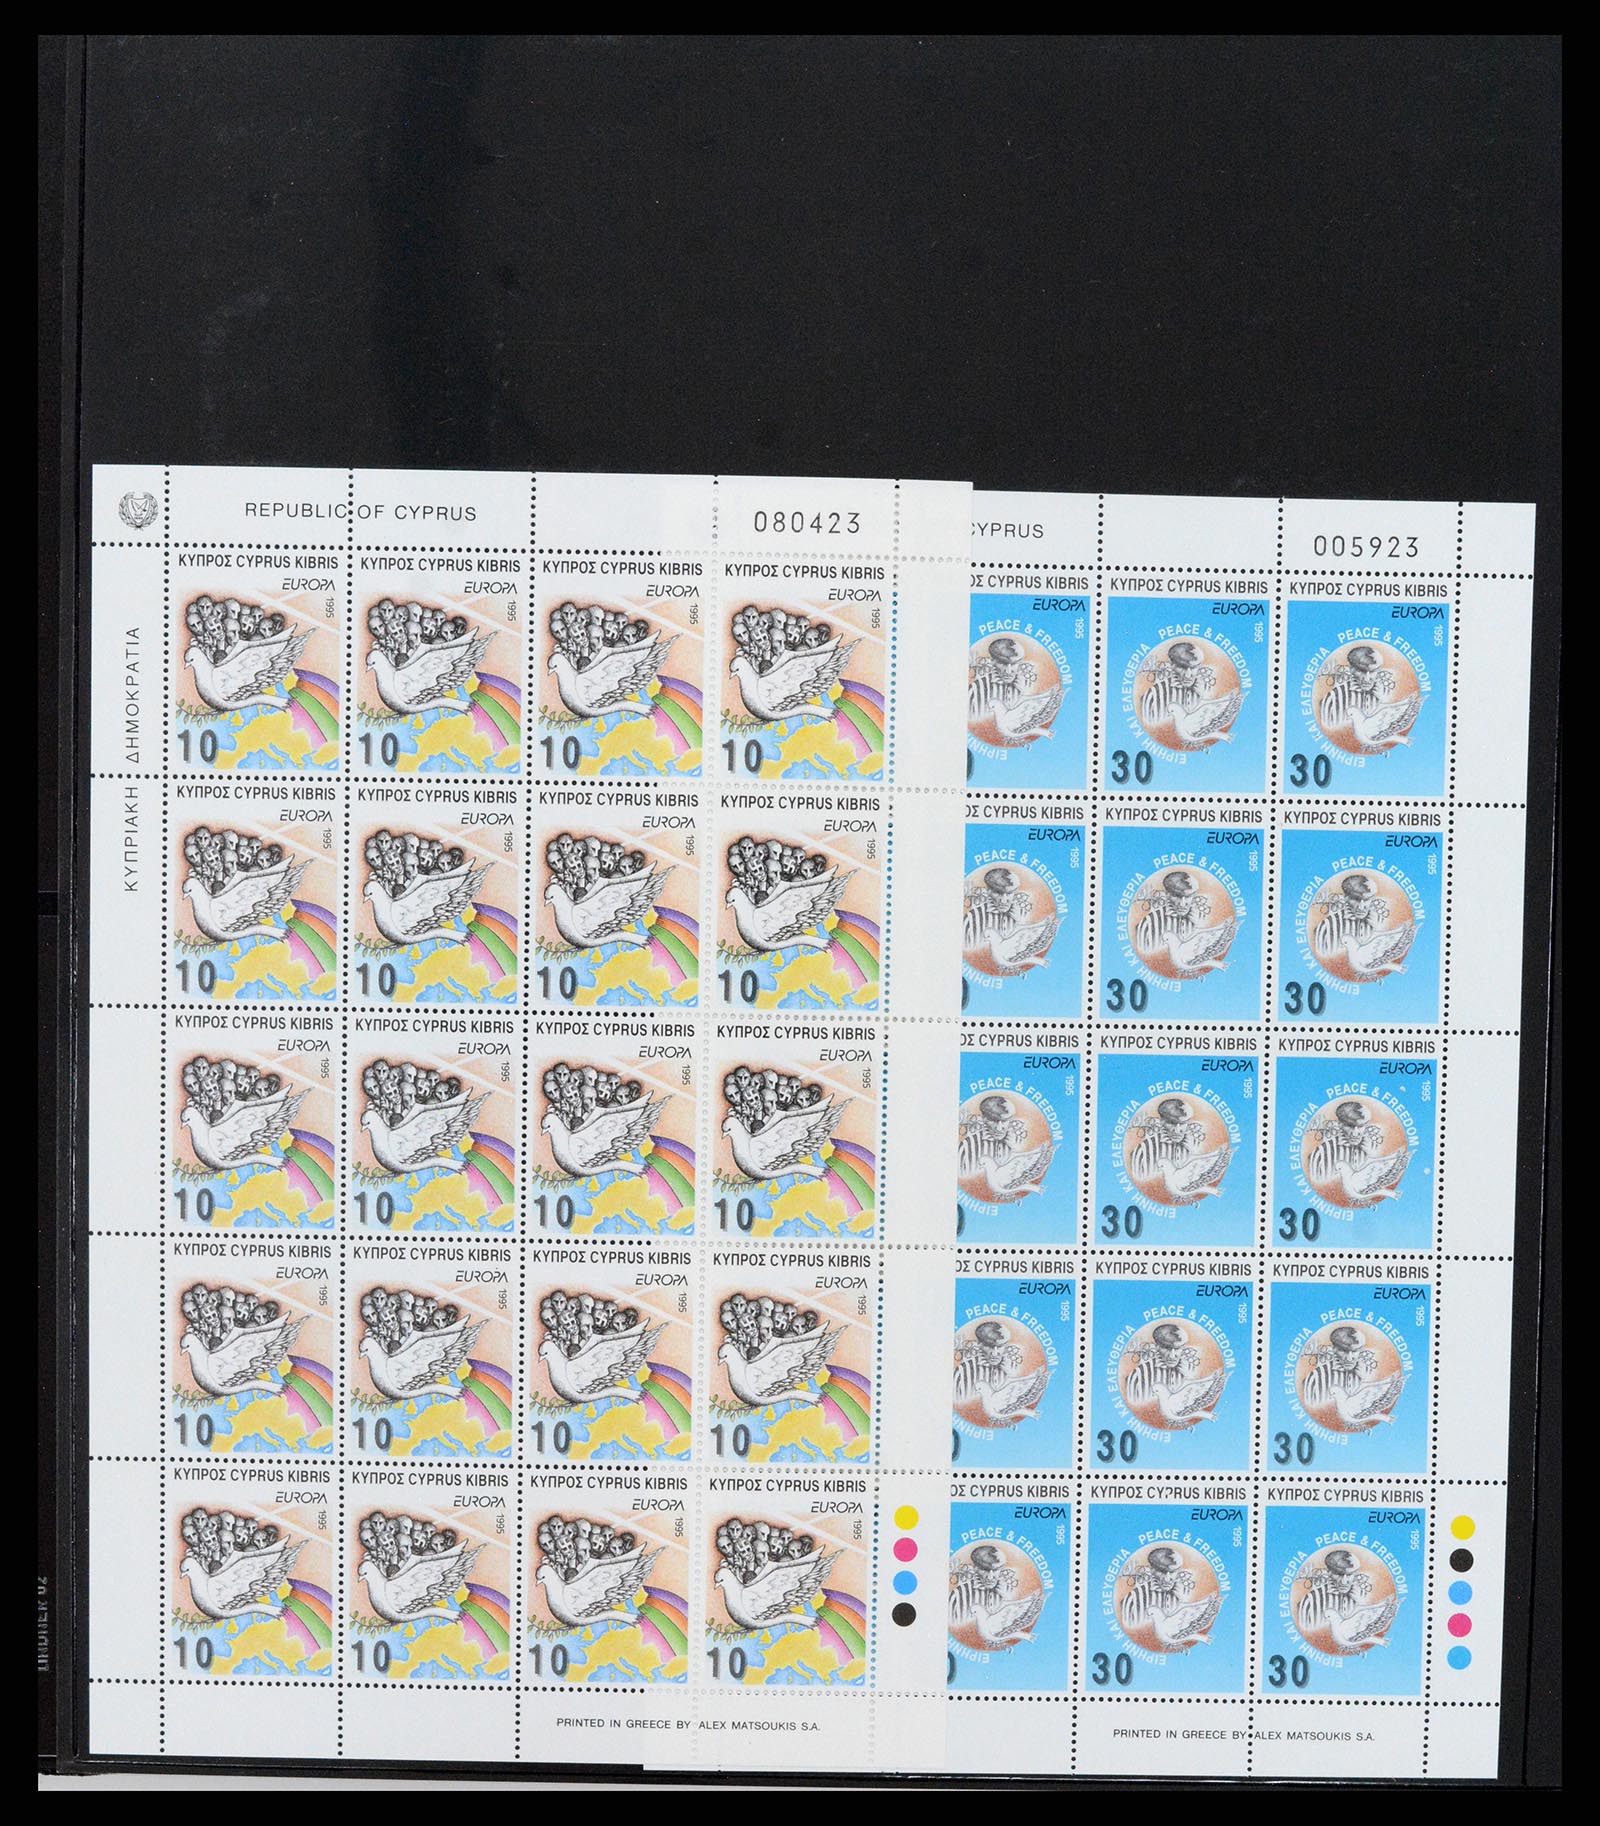 37345 023 - Stamp collection 37345 European countries souvenir sheets.